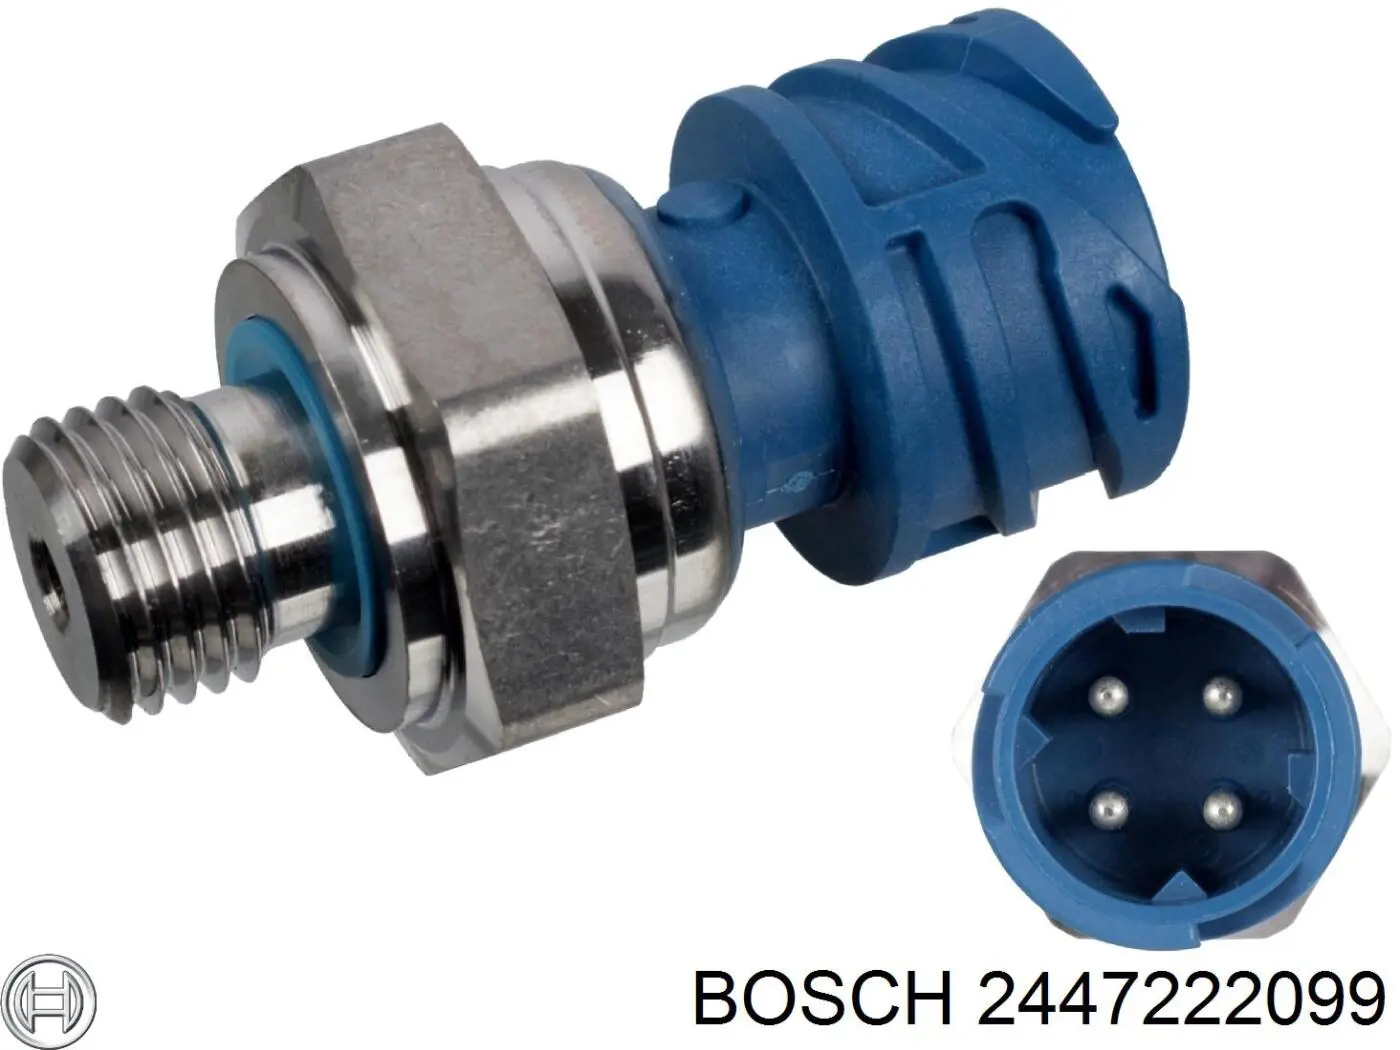 2447222099 Bosch bomba manual de alimentación, prebombeo de combustible